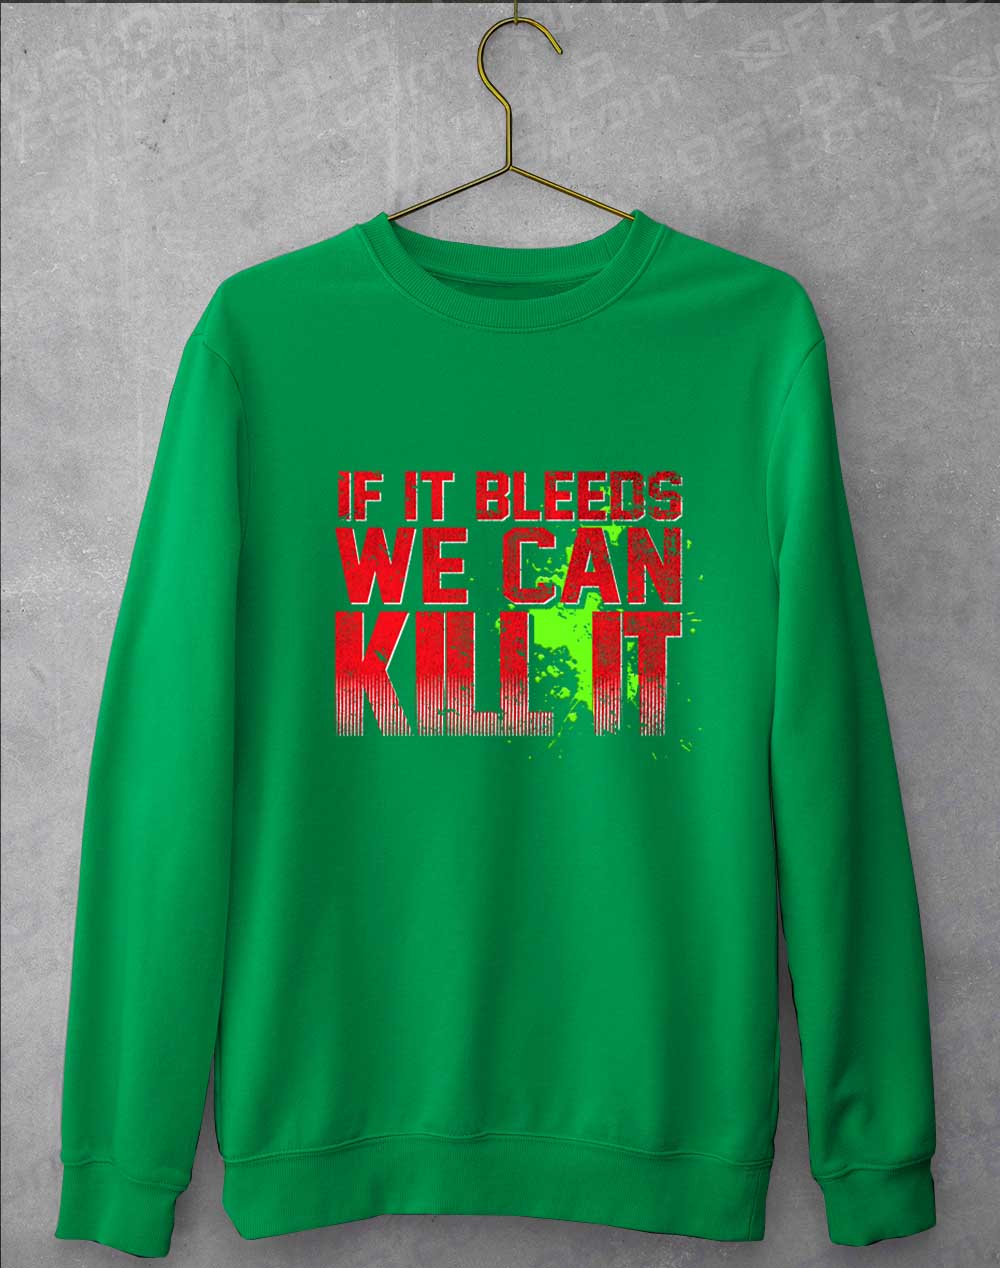 Kelly Green - If It Bleeds We Can Kill It Sweatshirt